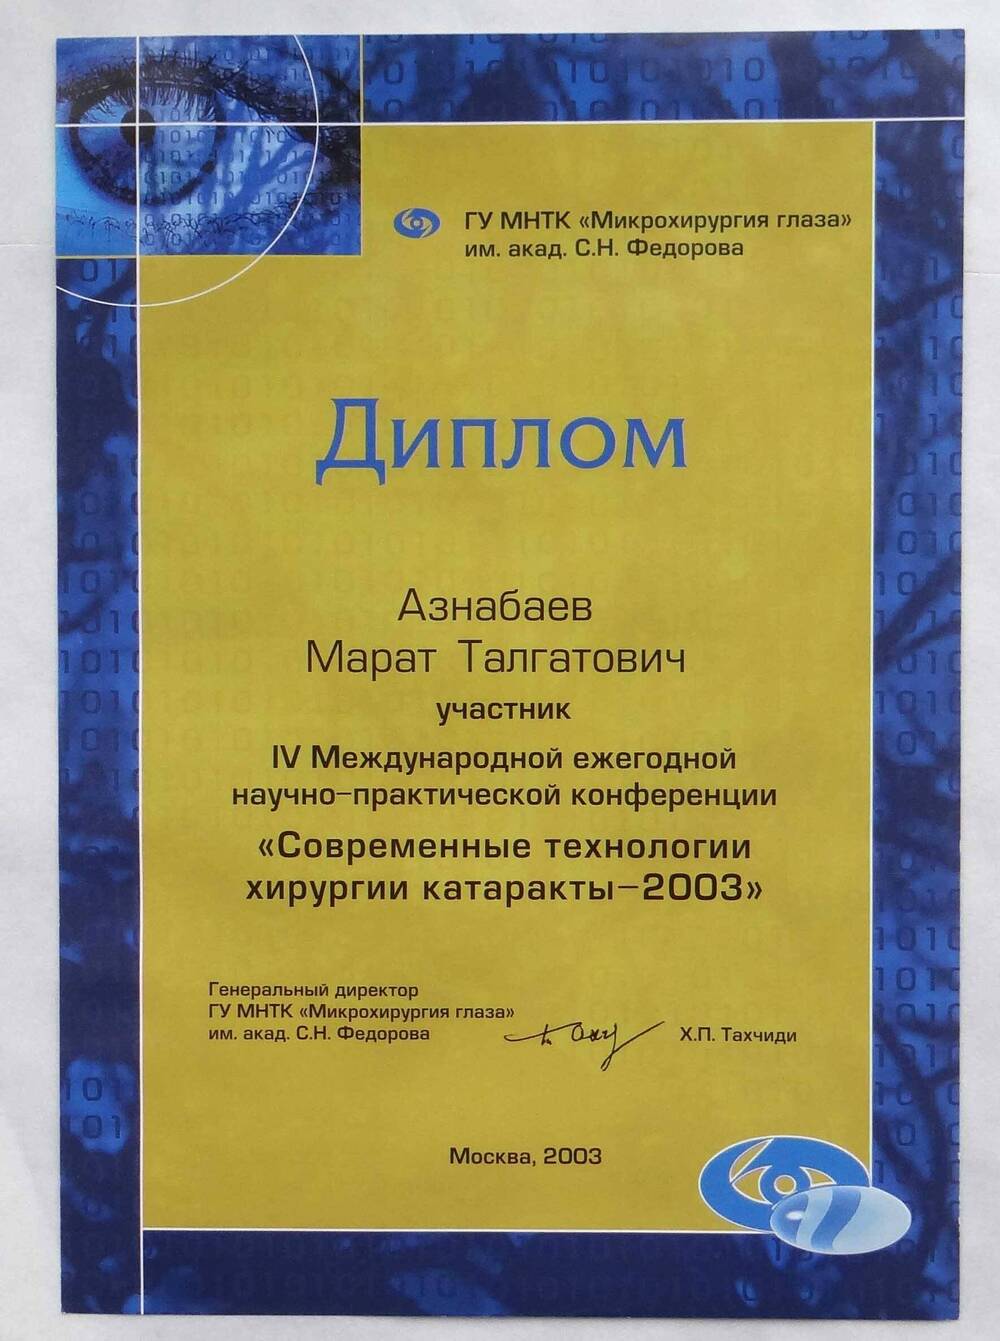 Диплом Азнабаева М.Т. - участника IV Международной ежегодной научно-практической конференции Современные технологии хирургии катаракты - 2003. Москва - 2003.